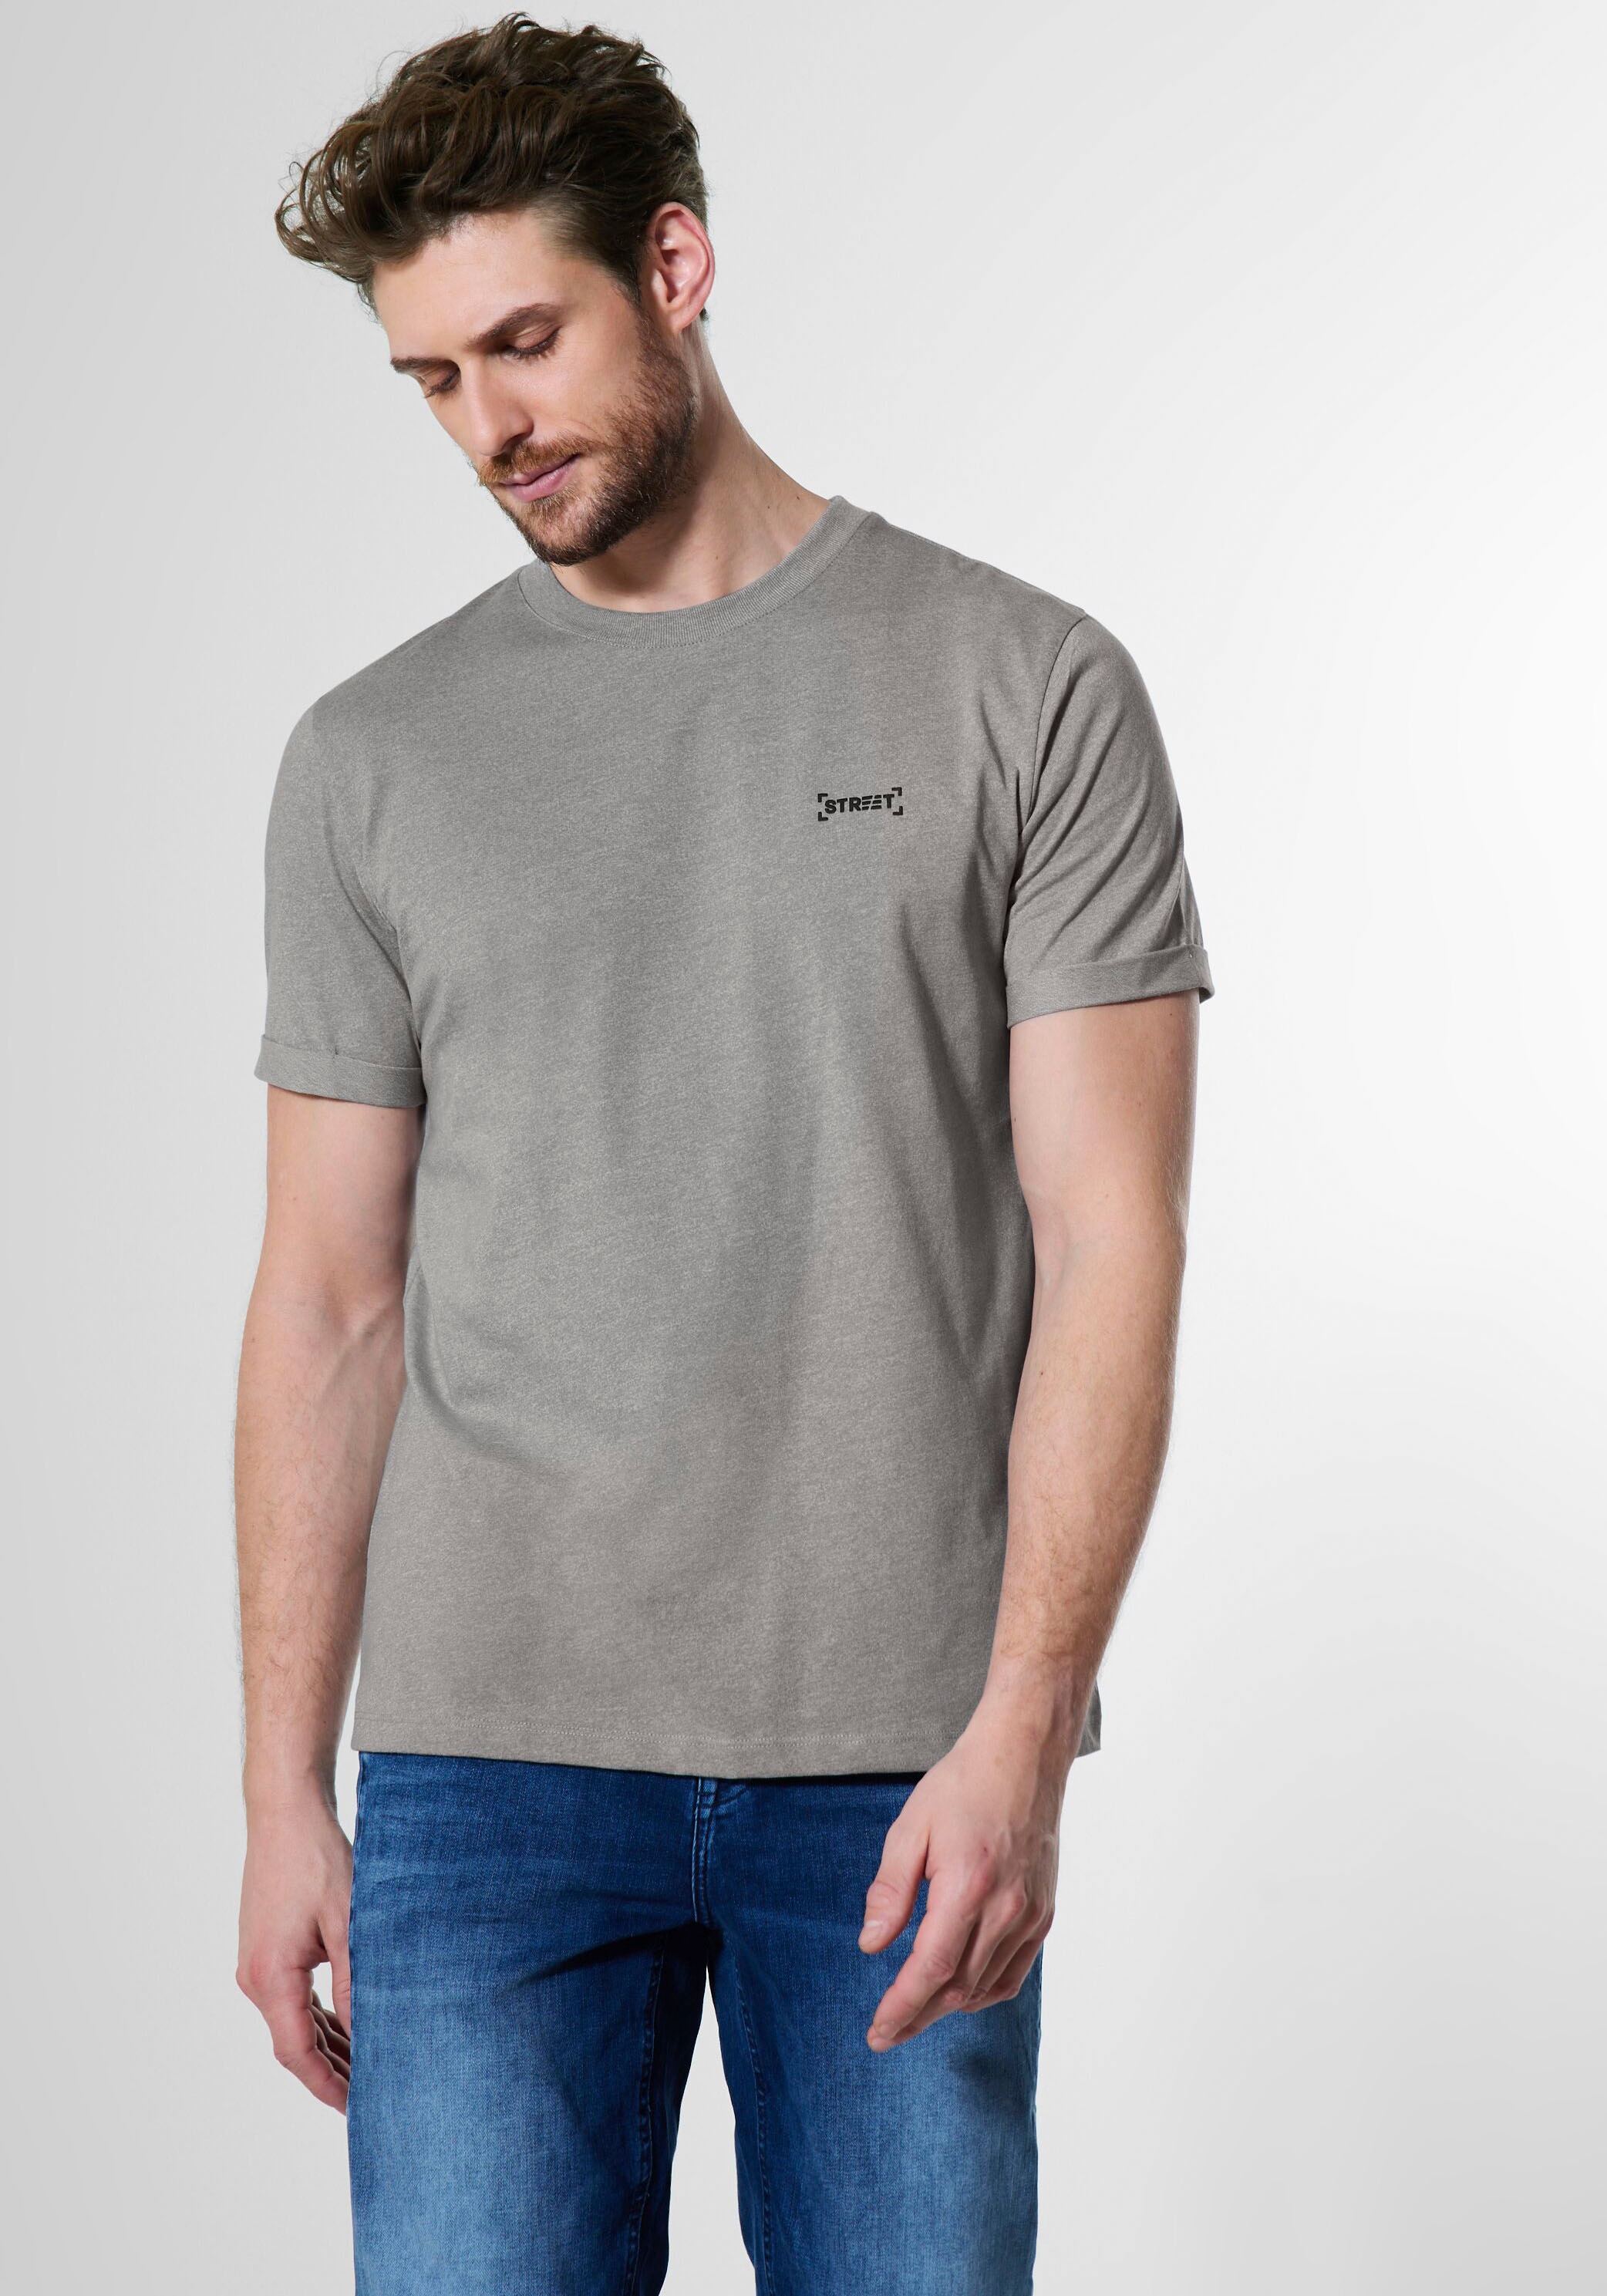 OTTO der online T-Shirt, Markenlabel ONE bei Brust STREET shoppen mit auf MEN